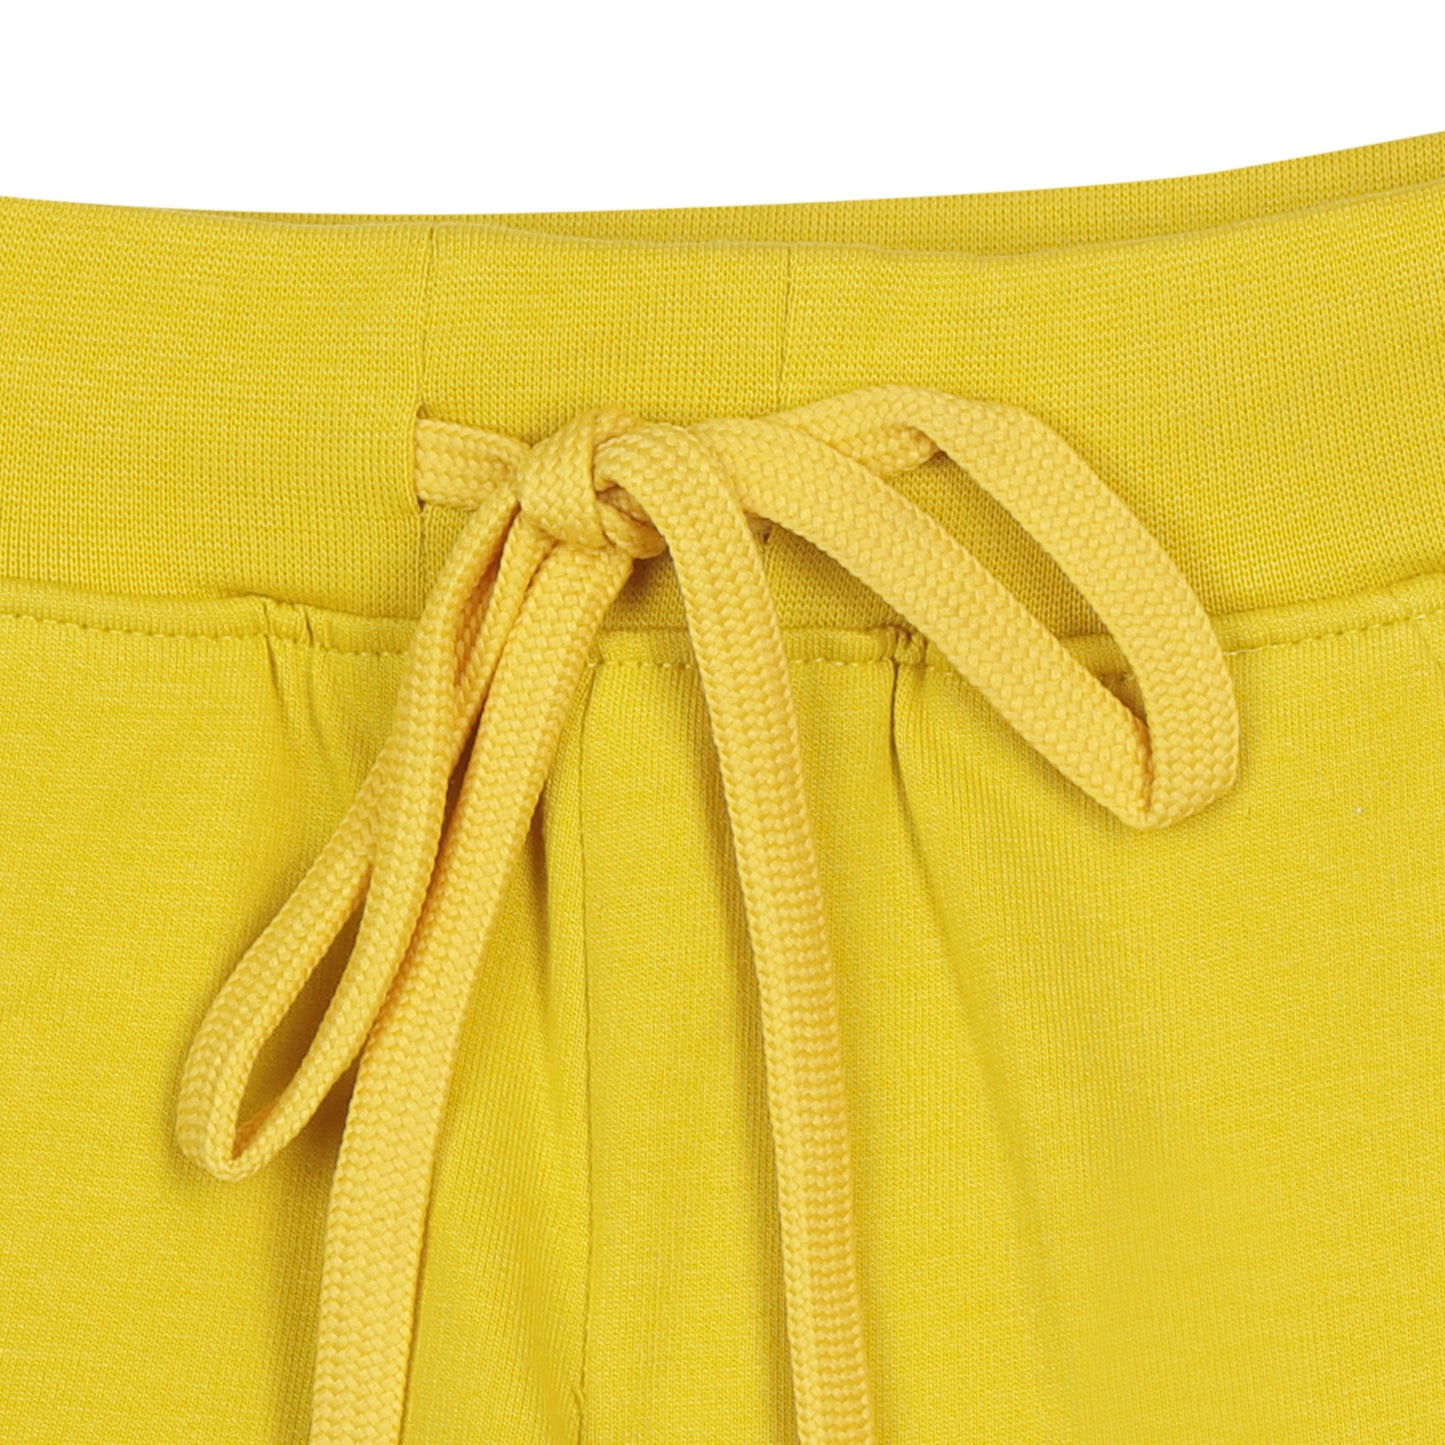 Mustard Shorts Plain Regular Fit